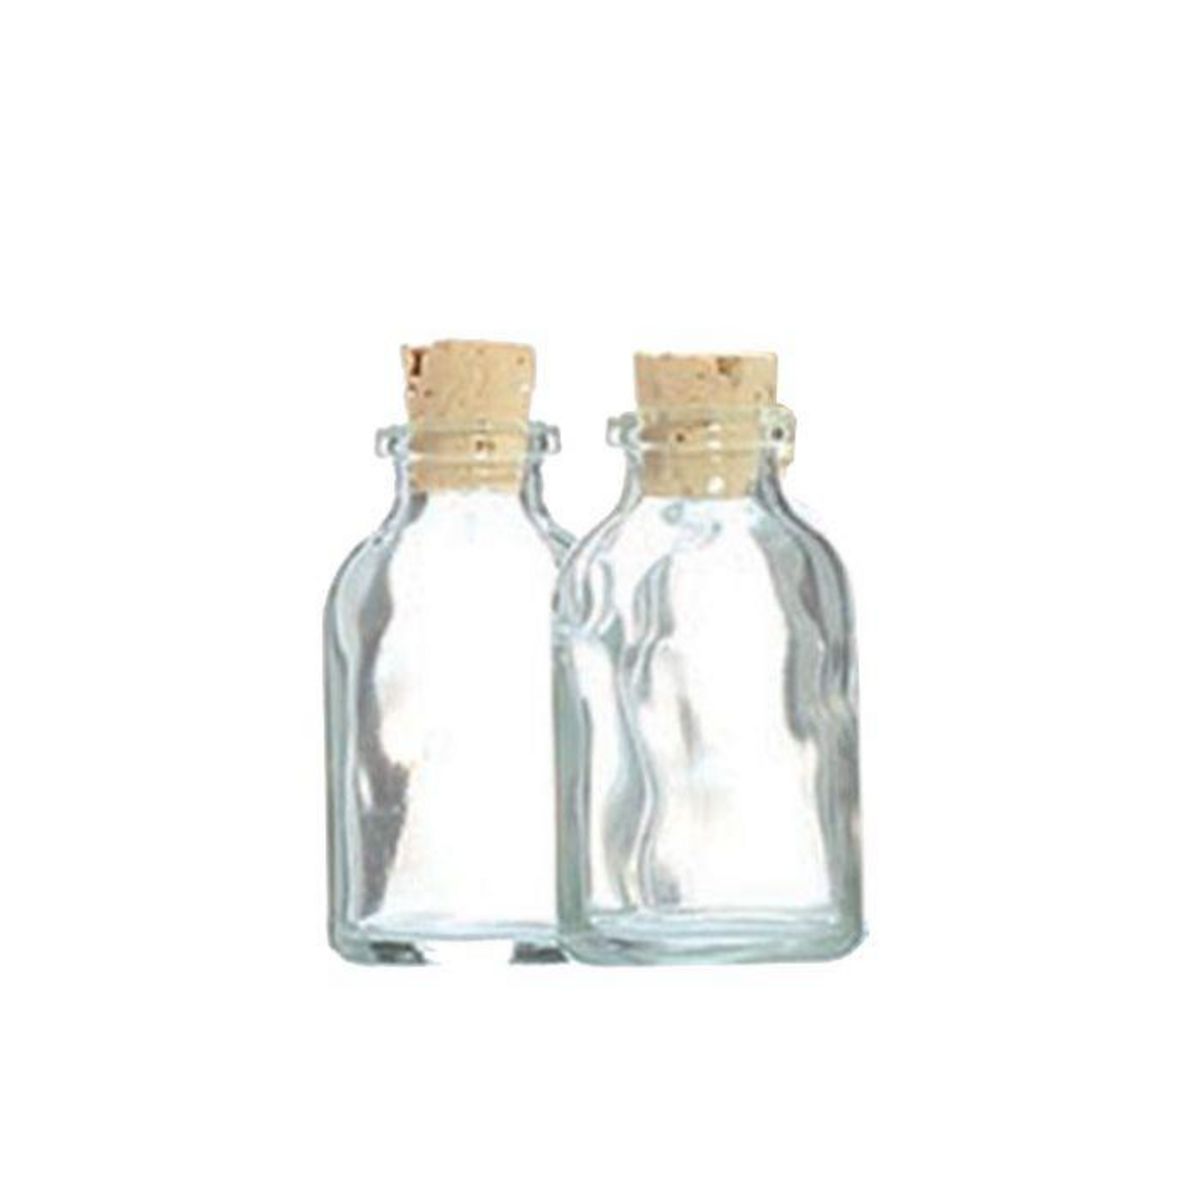 Graine créative 2 mini bouteilles en verre 6 cm avec bouchon liège